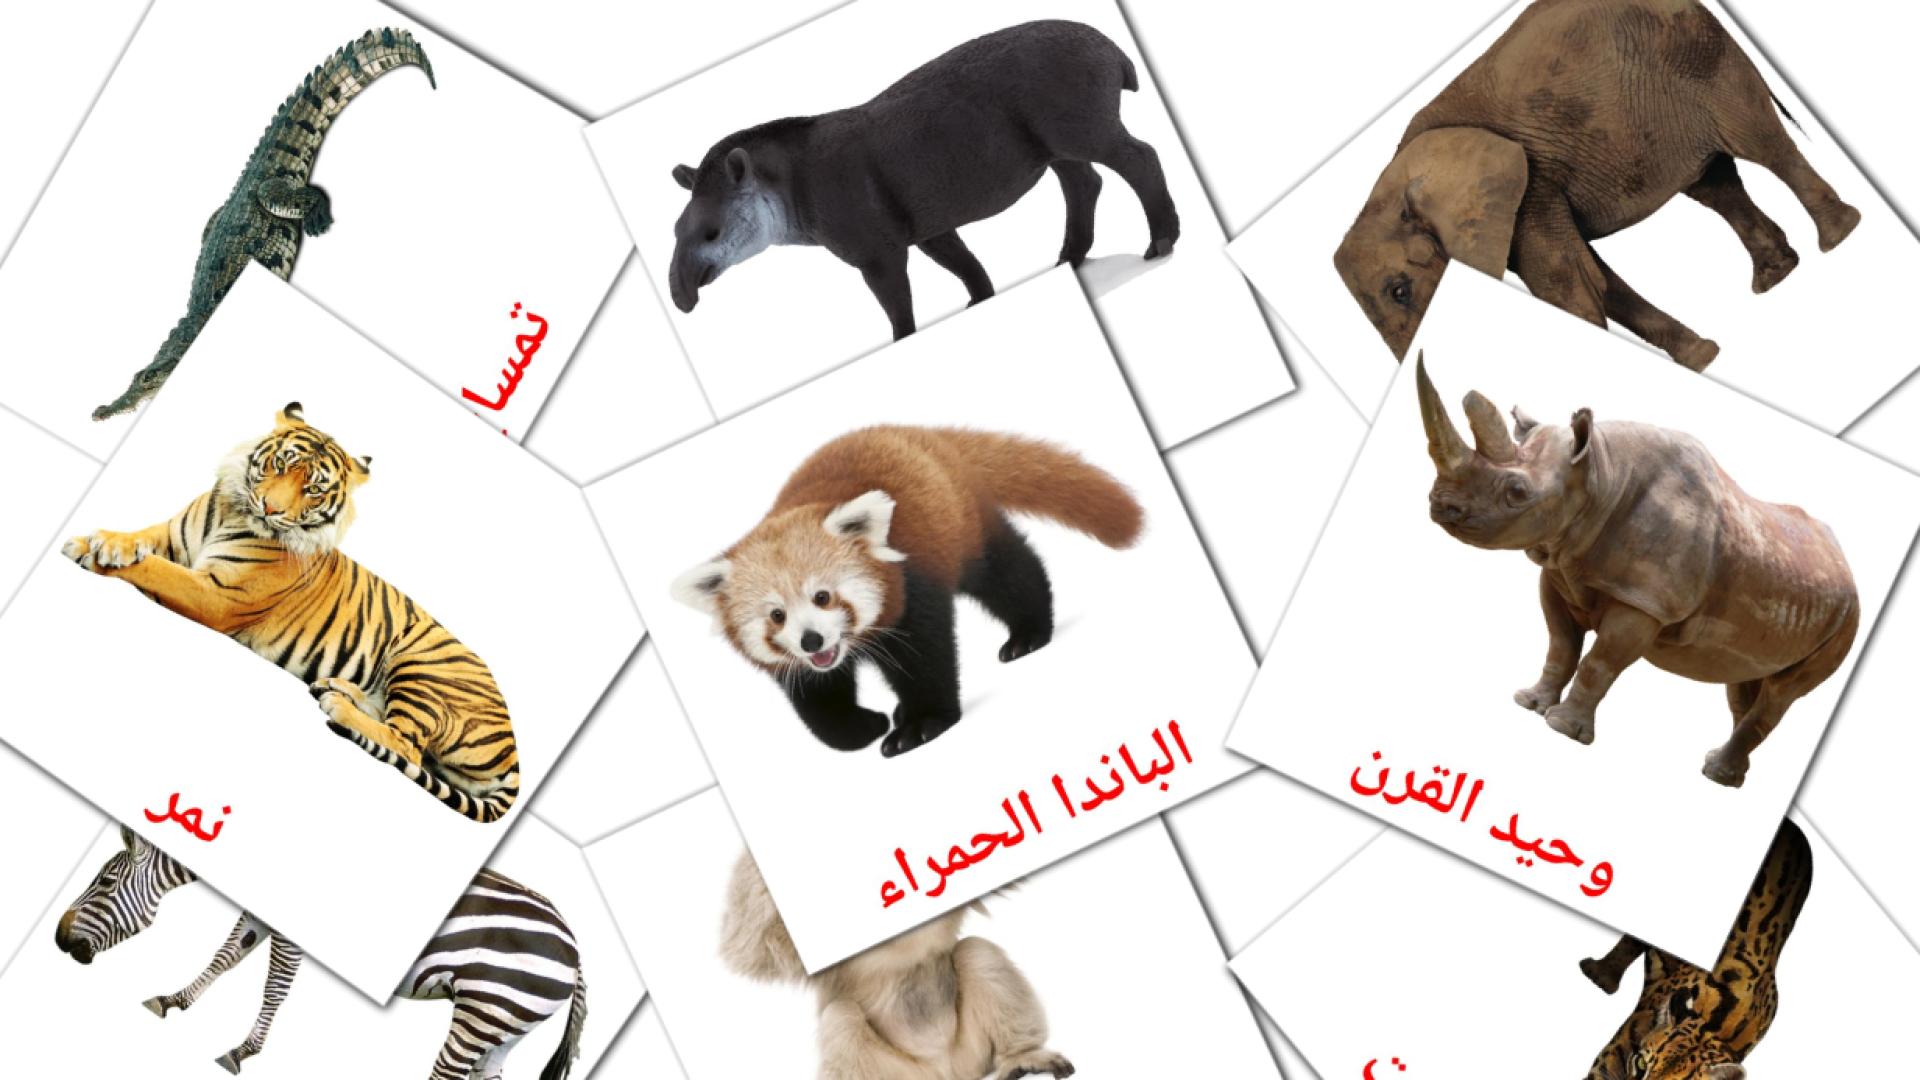 Bildkarten für Dschungel Tiere